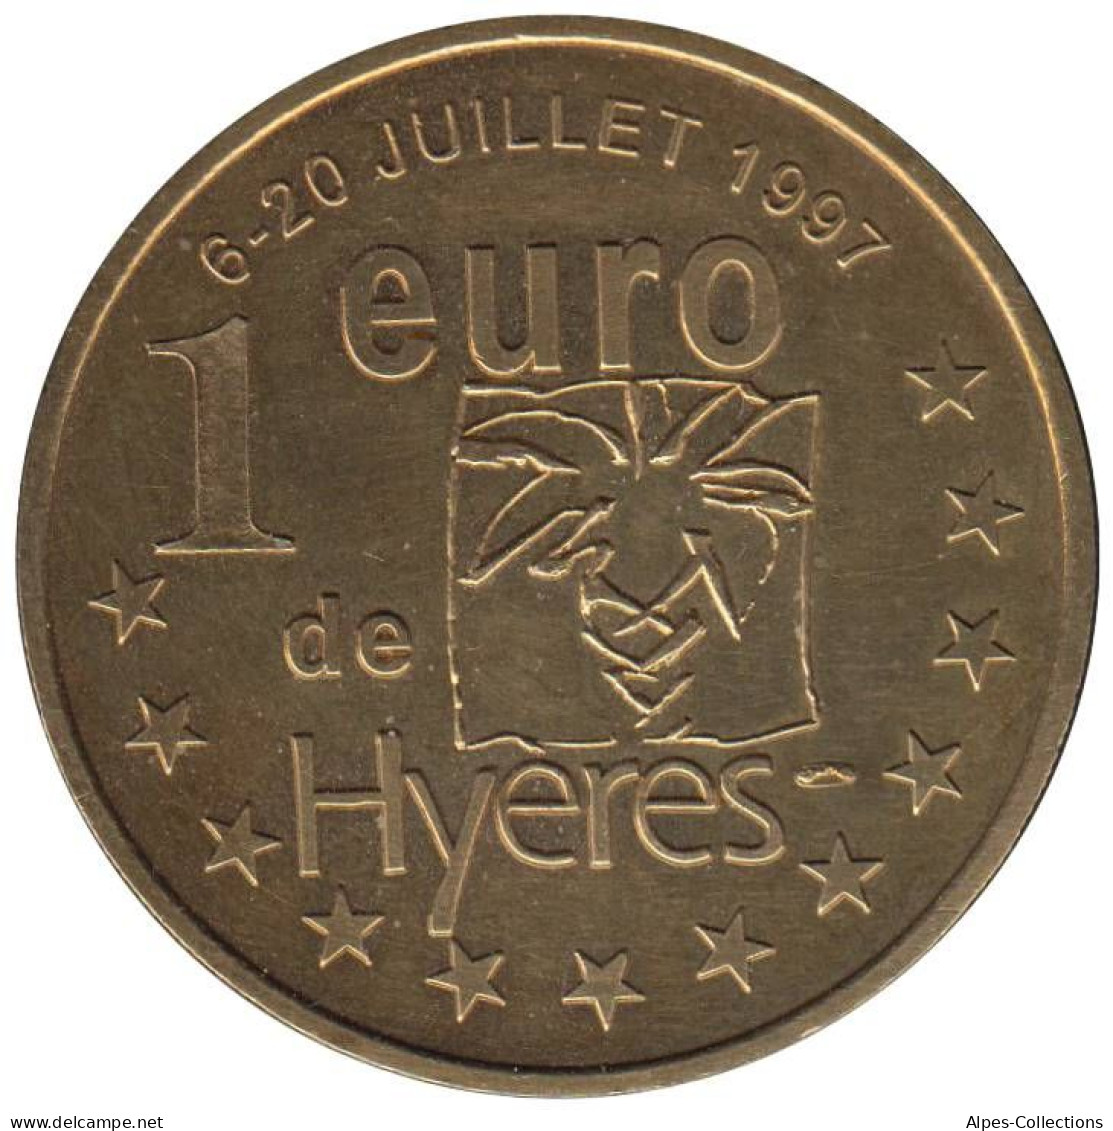 HYERES - EU0010.1 - 1 EURO DES VILLES - Réf: T295 - 1997 - Euro Van De Steden